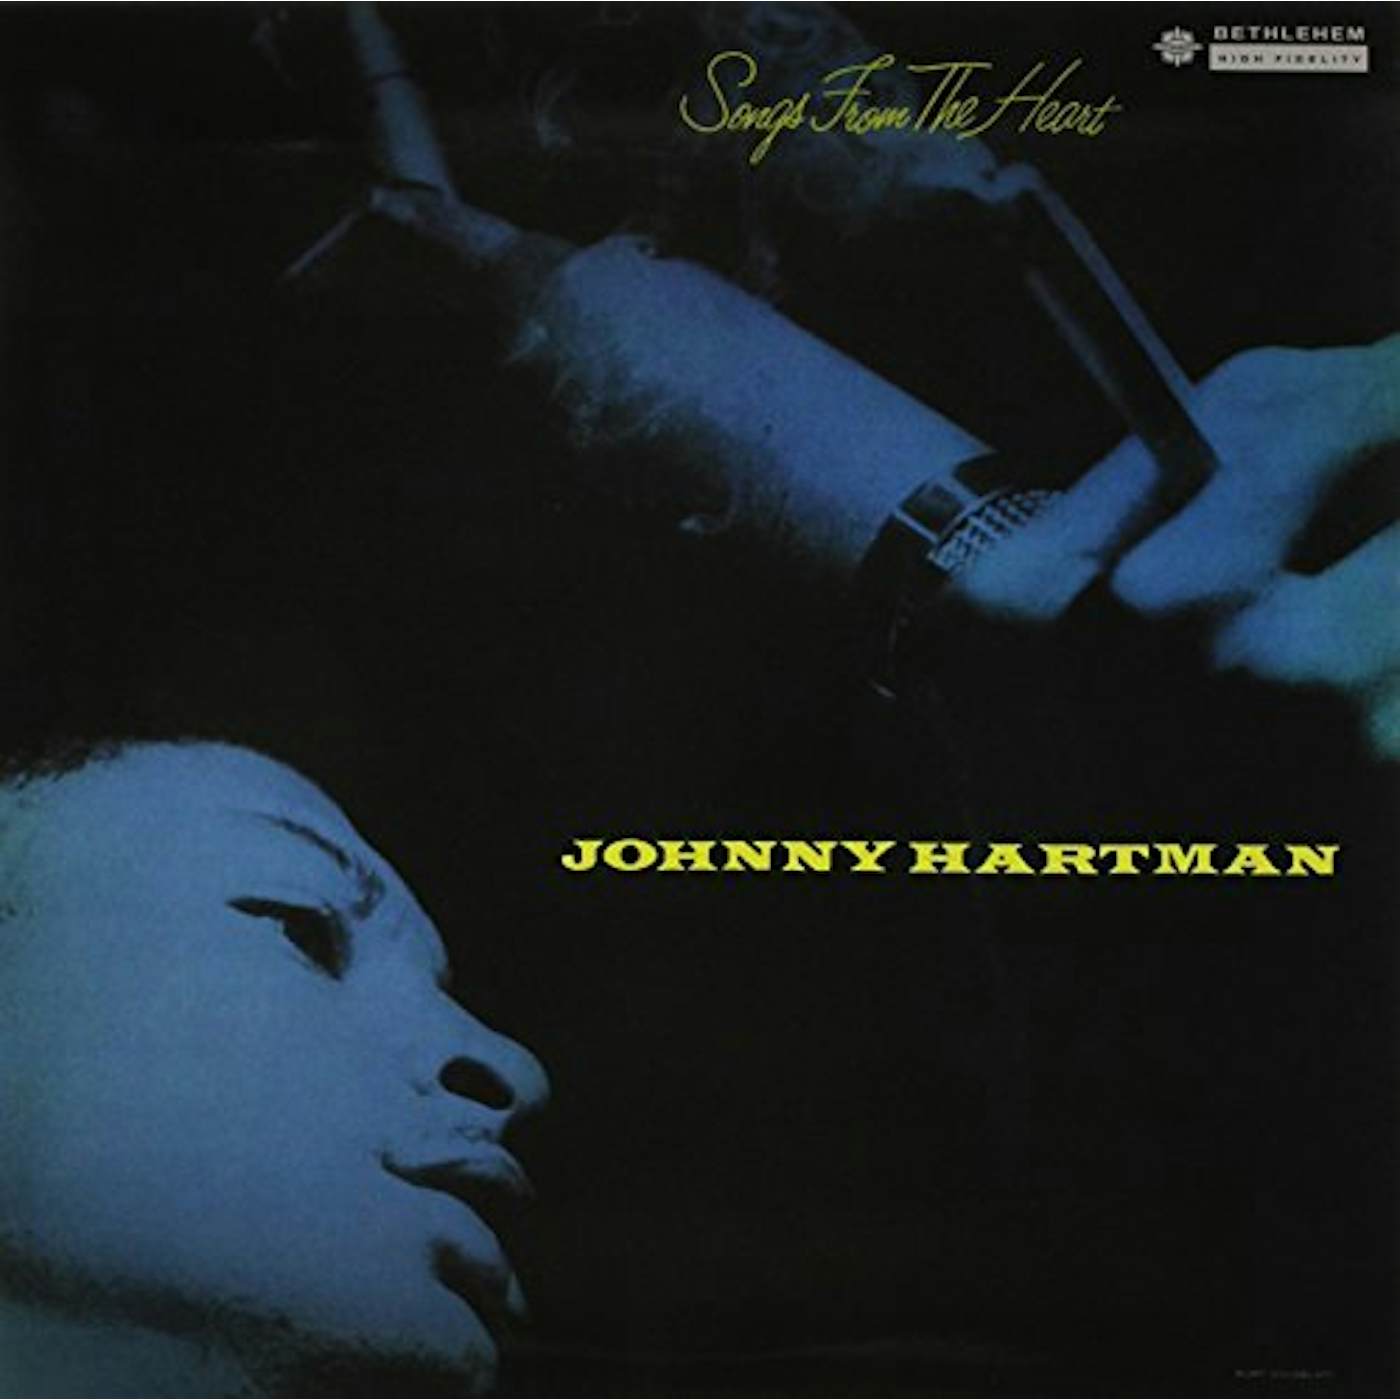 Johnny Hartman SONGS FROM THE HEART Vinyl Record